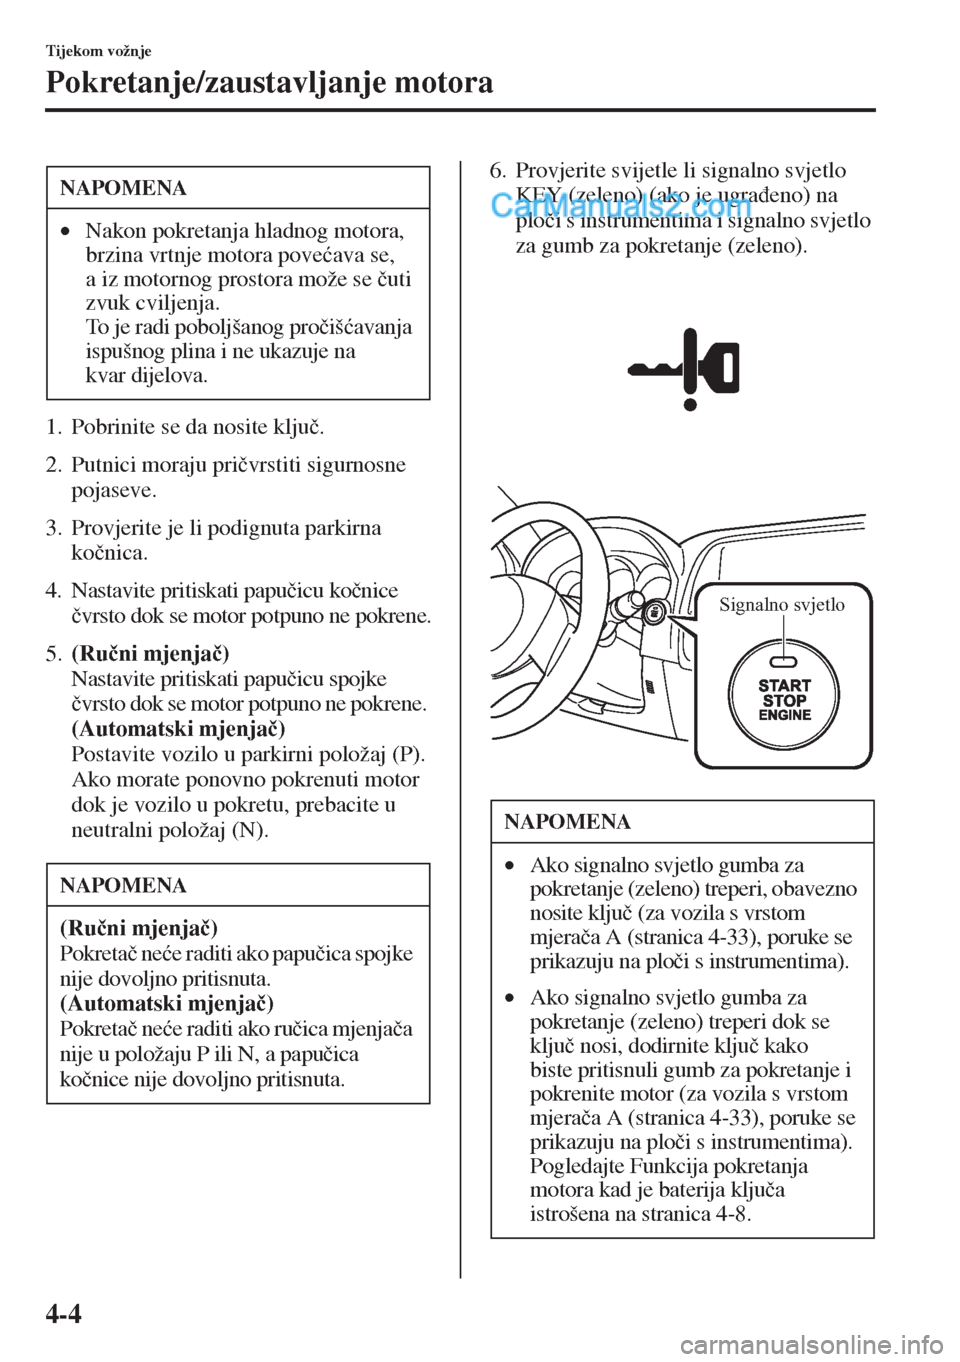 MAZDA MODEL CX-5 2015  Upute za uporabu (in Crotian) 4-4
Tijekom vožnje
Pokretanje/zaustavljanje motora
1. Pobrinite se da nosite klju�þ.
2. Putnici moraju pri�þvrstiti sigurnosne 
pojaseve.
3. Provjerite je li podignuta parkirna 
ko�þnica.
4. Nasta